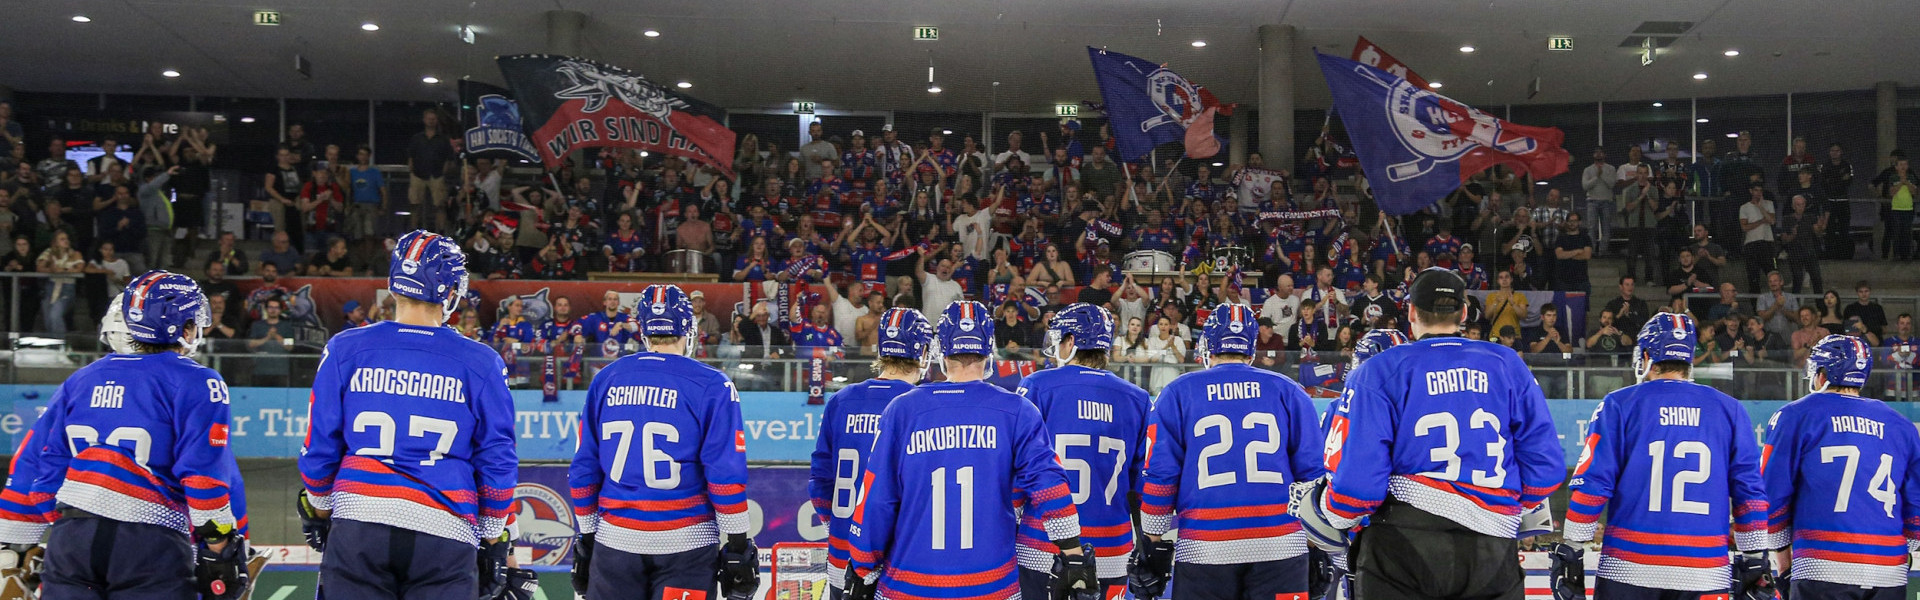 Der HC Innsbruck spielt heuer erstmals in der Champions Hockey League und fuhr dort bereits zwei Siege ein